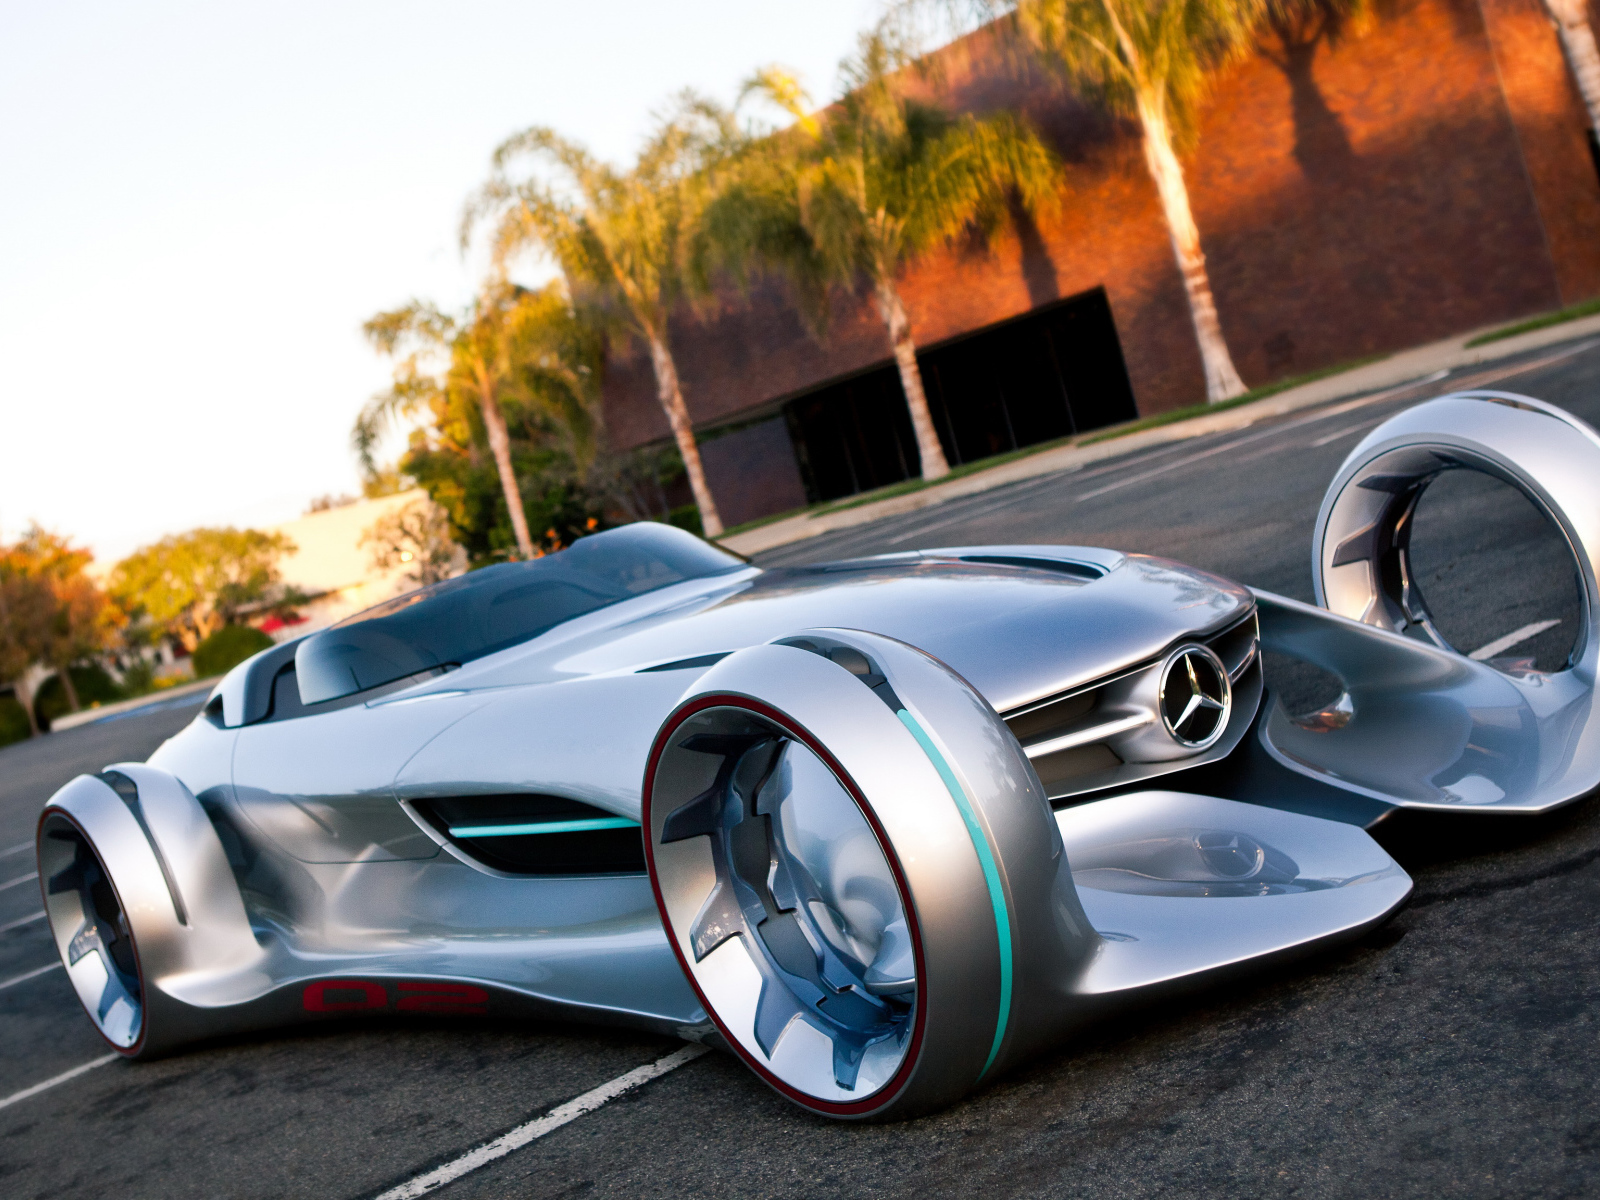 Необычный серебристый автомобиль Mercedes-Benz Silver Arrow Concept